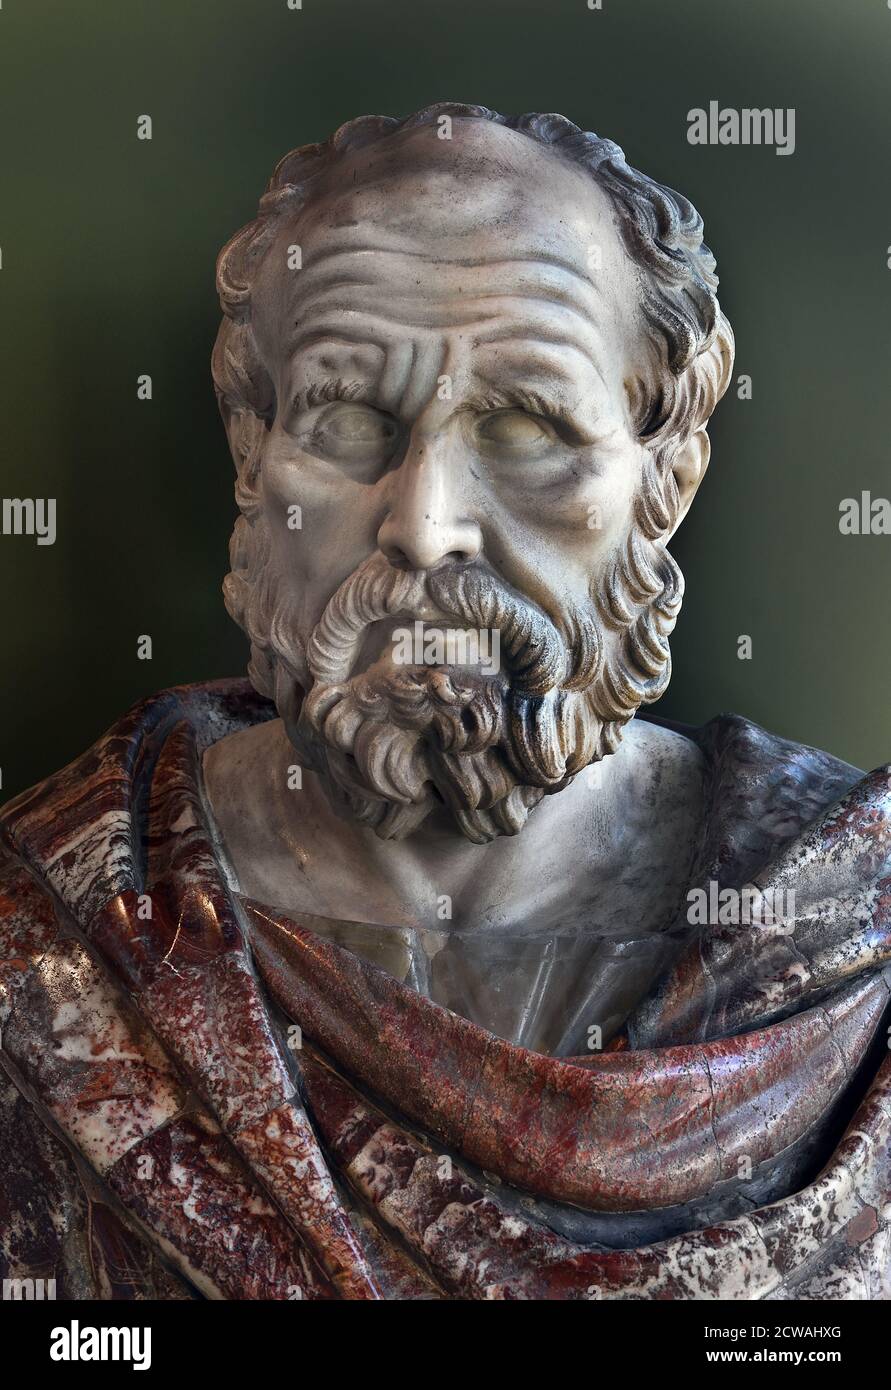 Thucydides 460 - 400 av. J.-C. était commandant de l'armée athénienne et historien de la guerre du Péloponnèse entre Athènes et Sparte. Buste Musée Allard Pierson du XVIIIe siècle. Banque D'Images